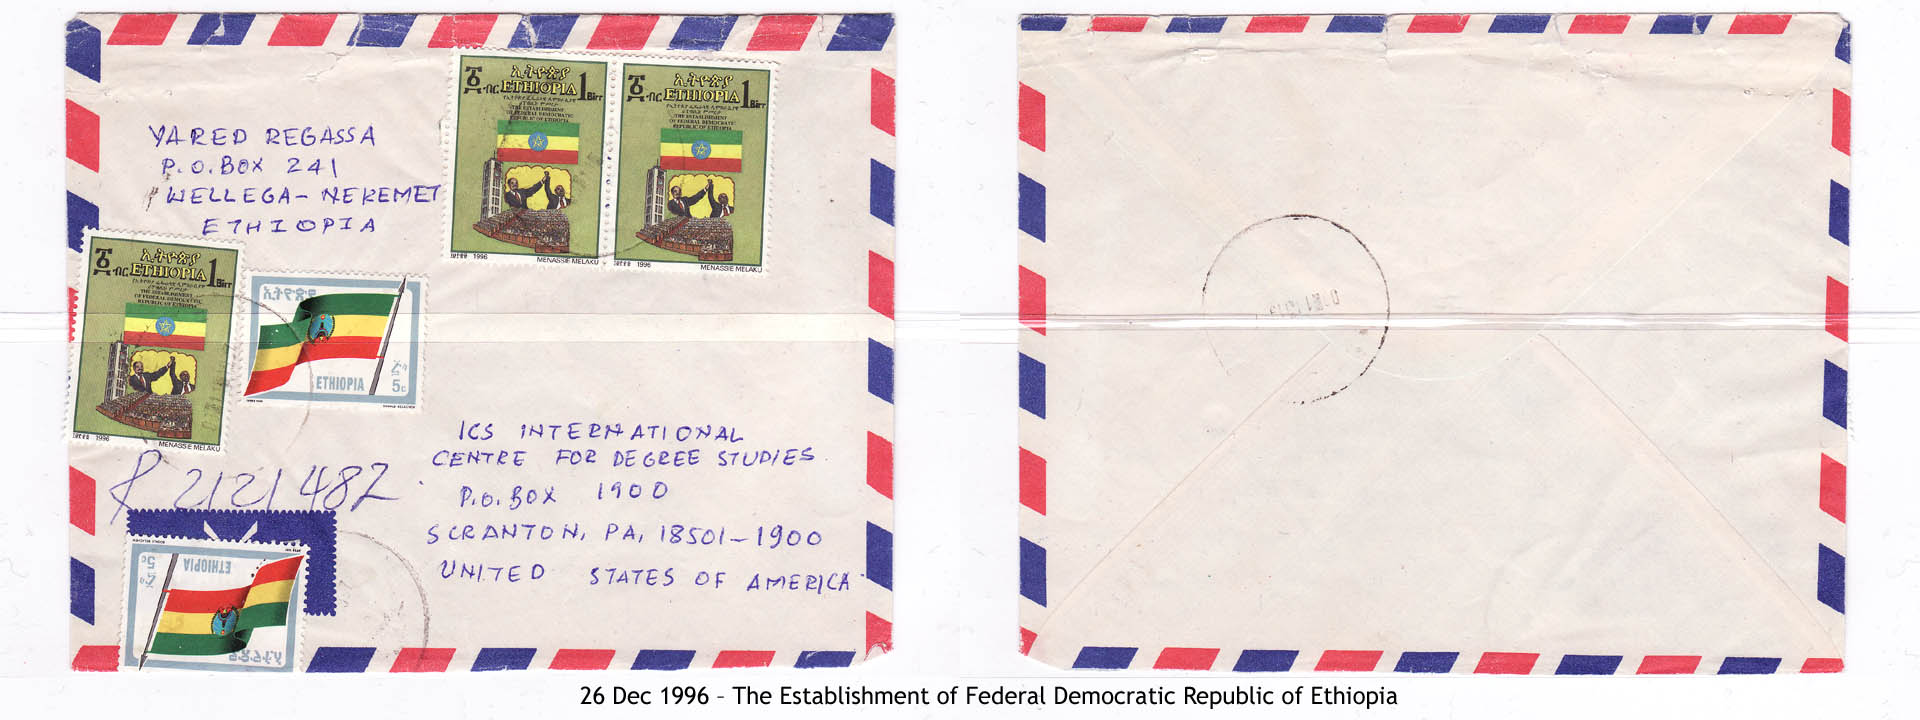 19961226 – The Establishment of Federal Democratic Republic of Ethiopia